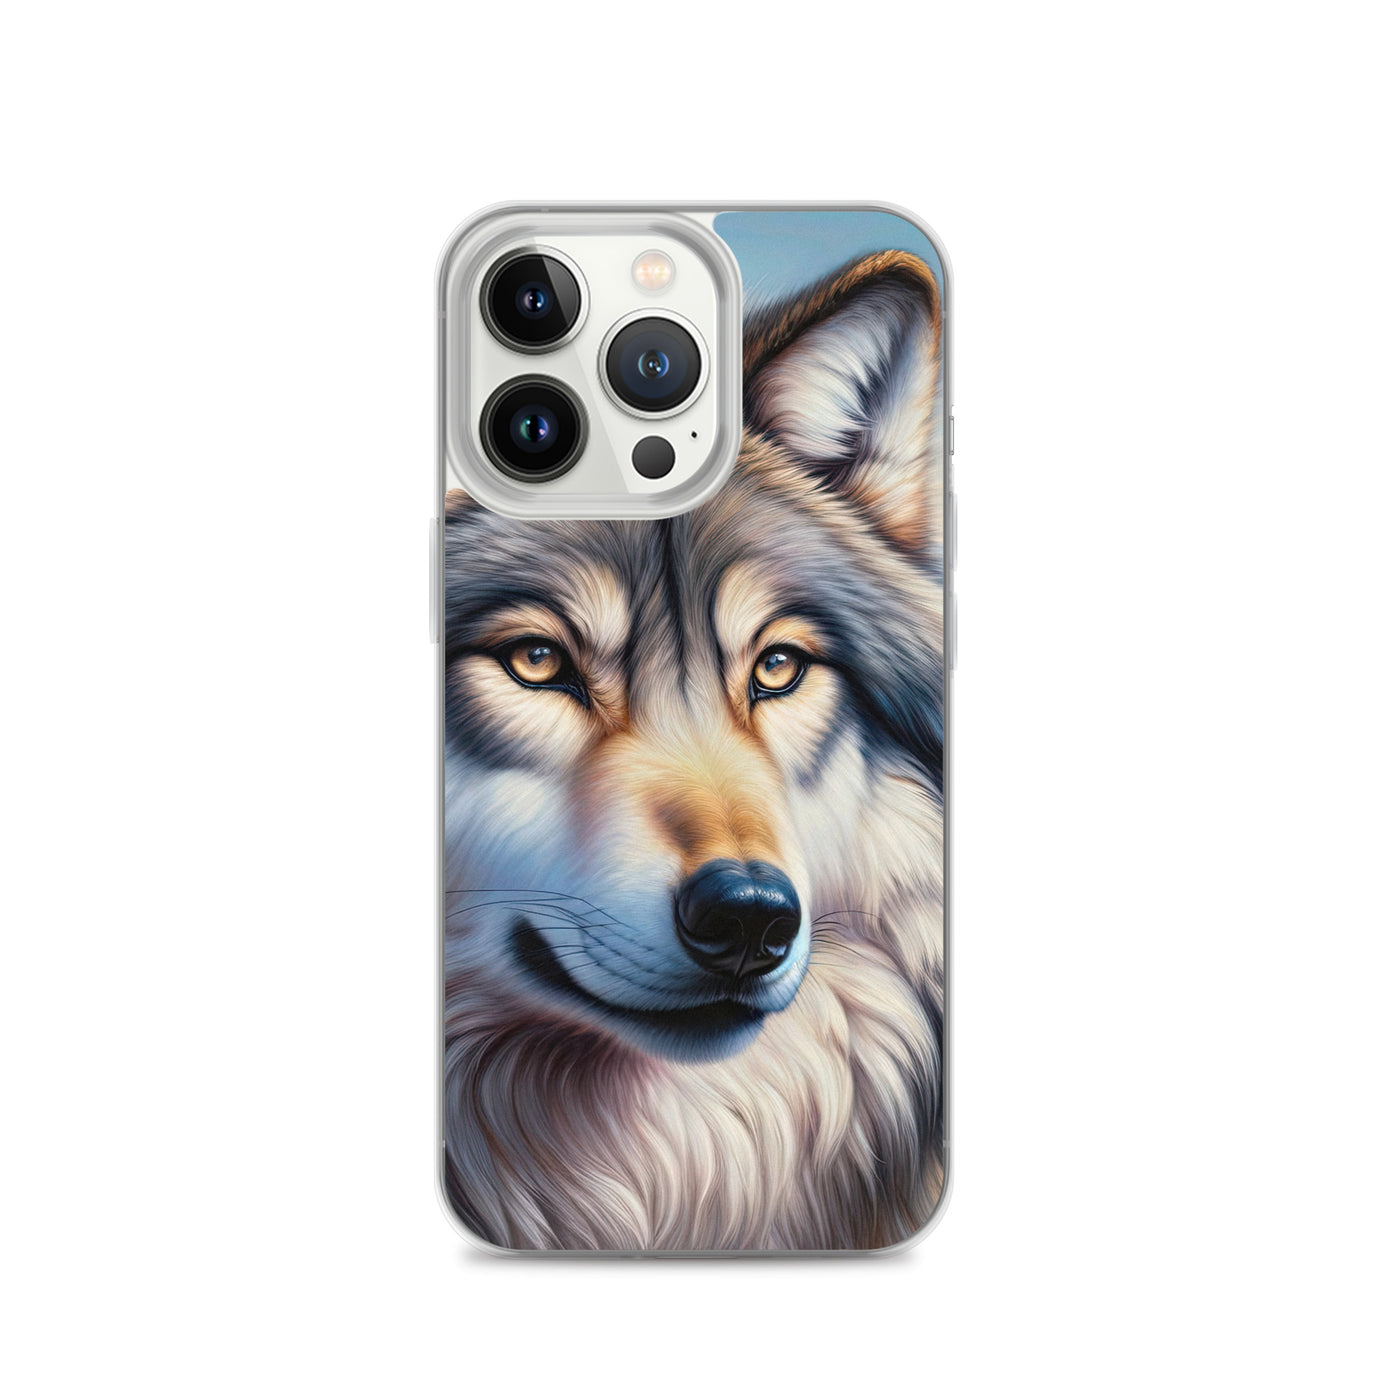 Ölgemäldeporträt eines majestätischen Wolfes mit intensiven Augen in der Berglandschaft (AN) - iPhone Schutzhülle (durchsichtig) xxx yyy zzz iPhone 13 Pro